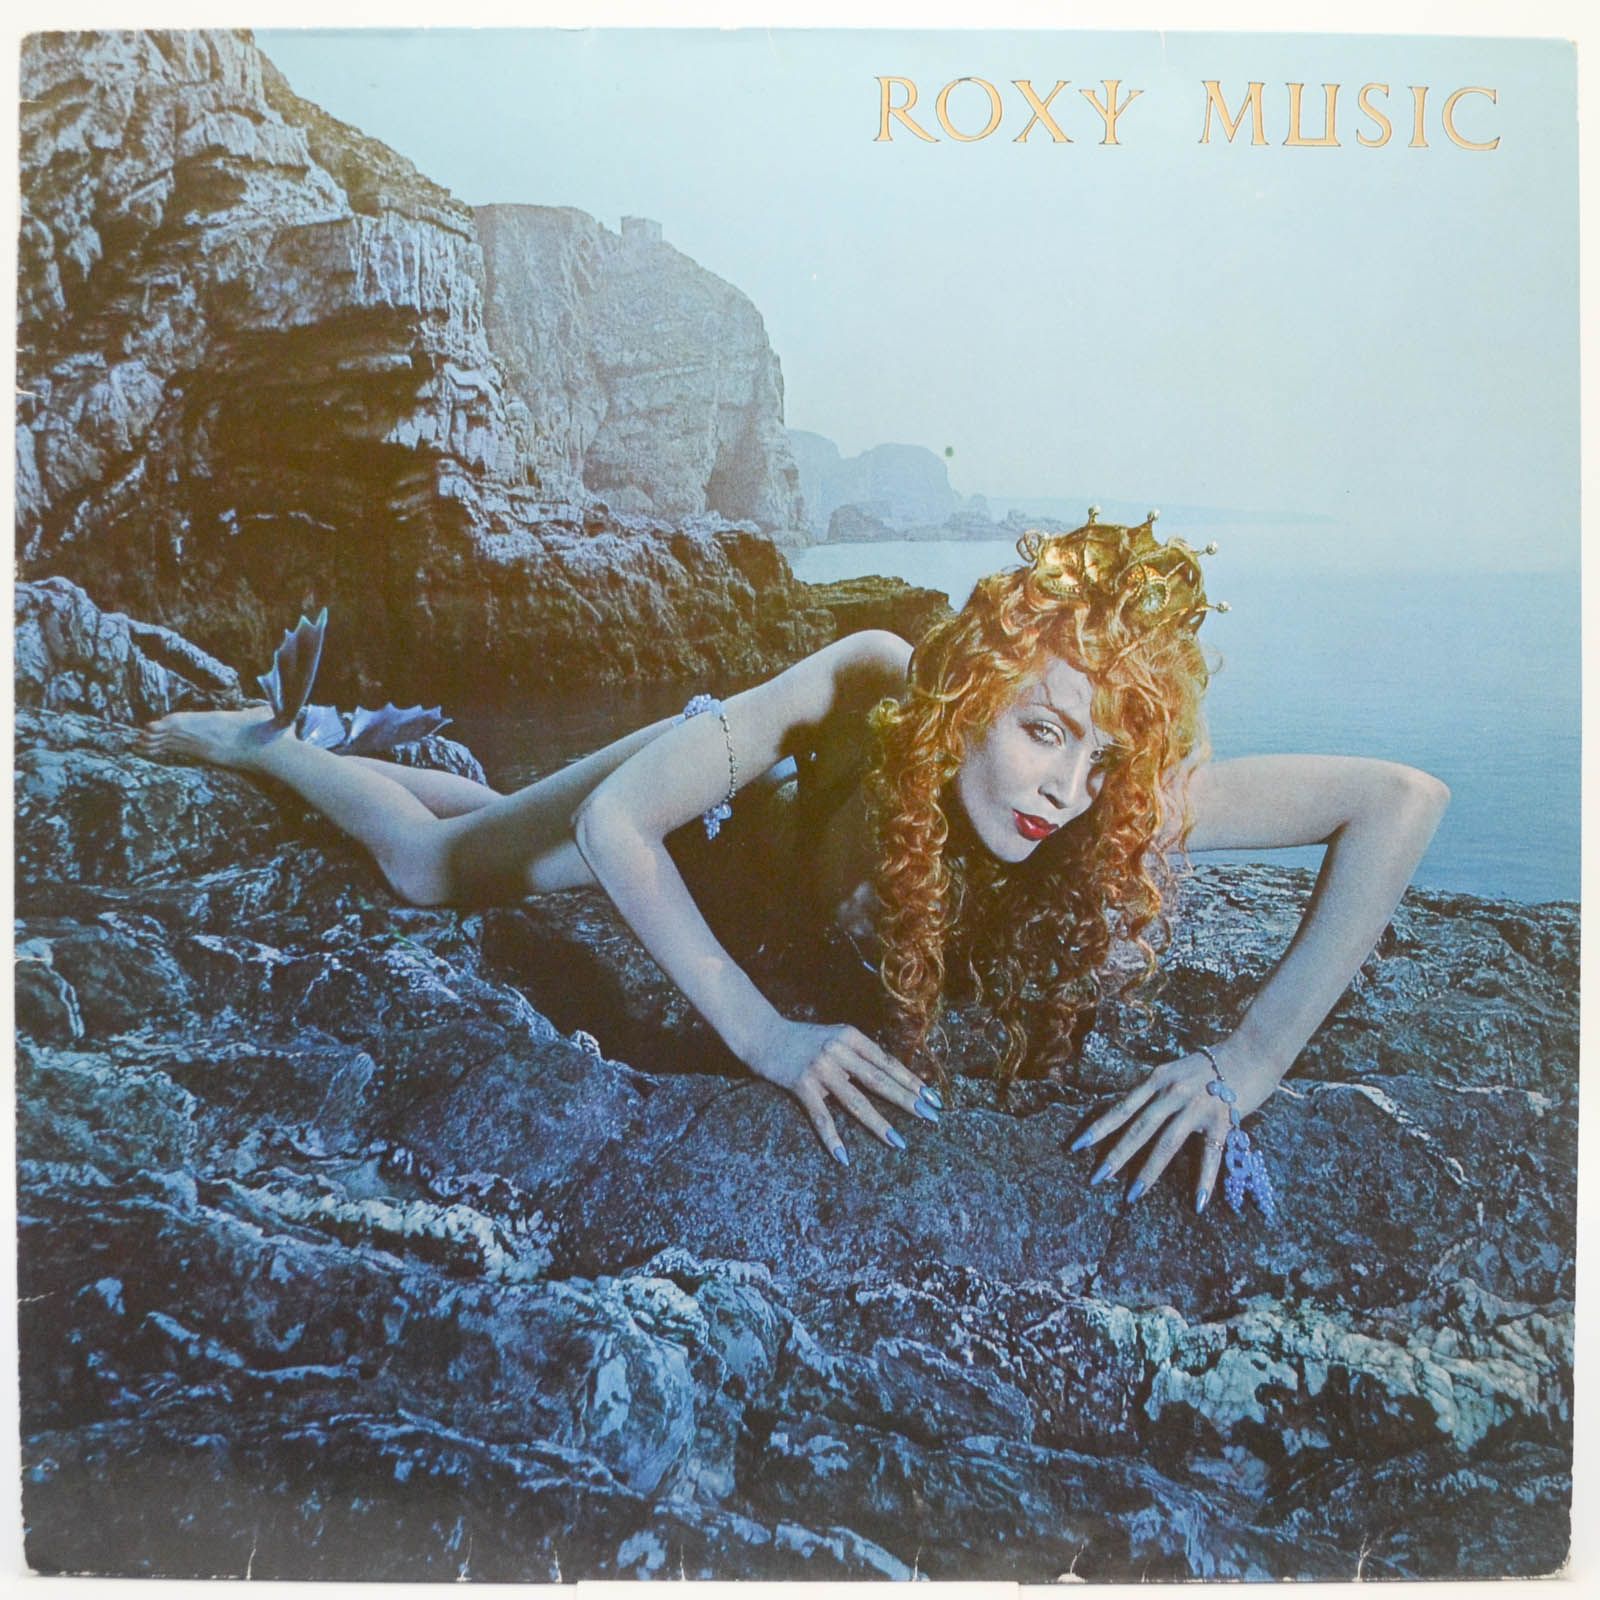 Roxy Music — Siren, 1975